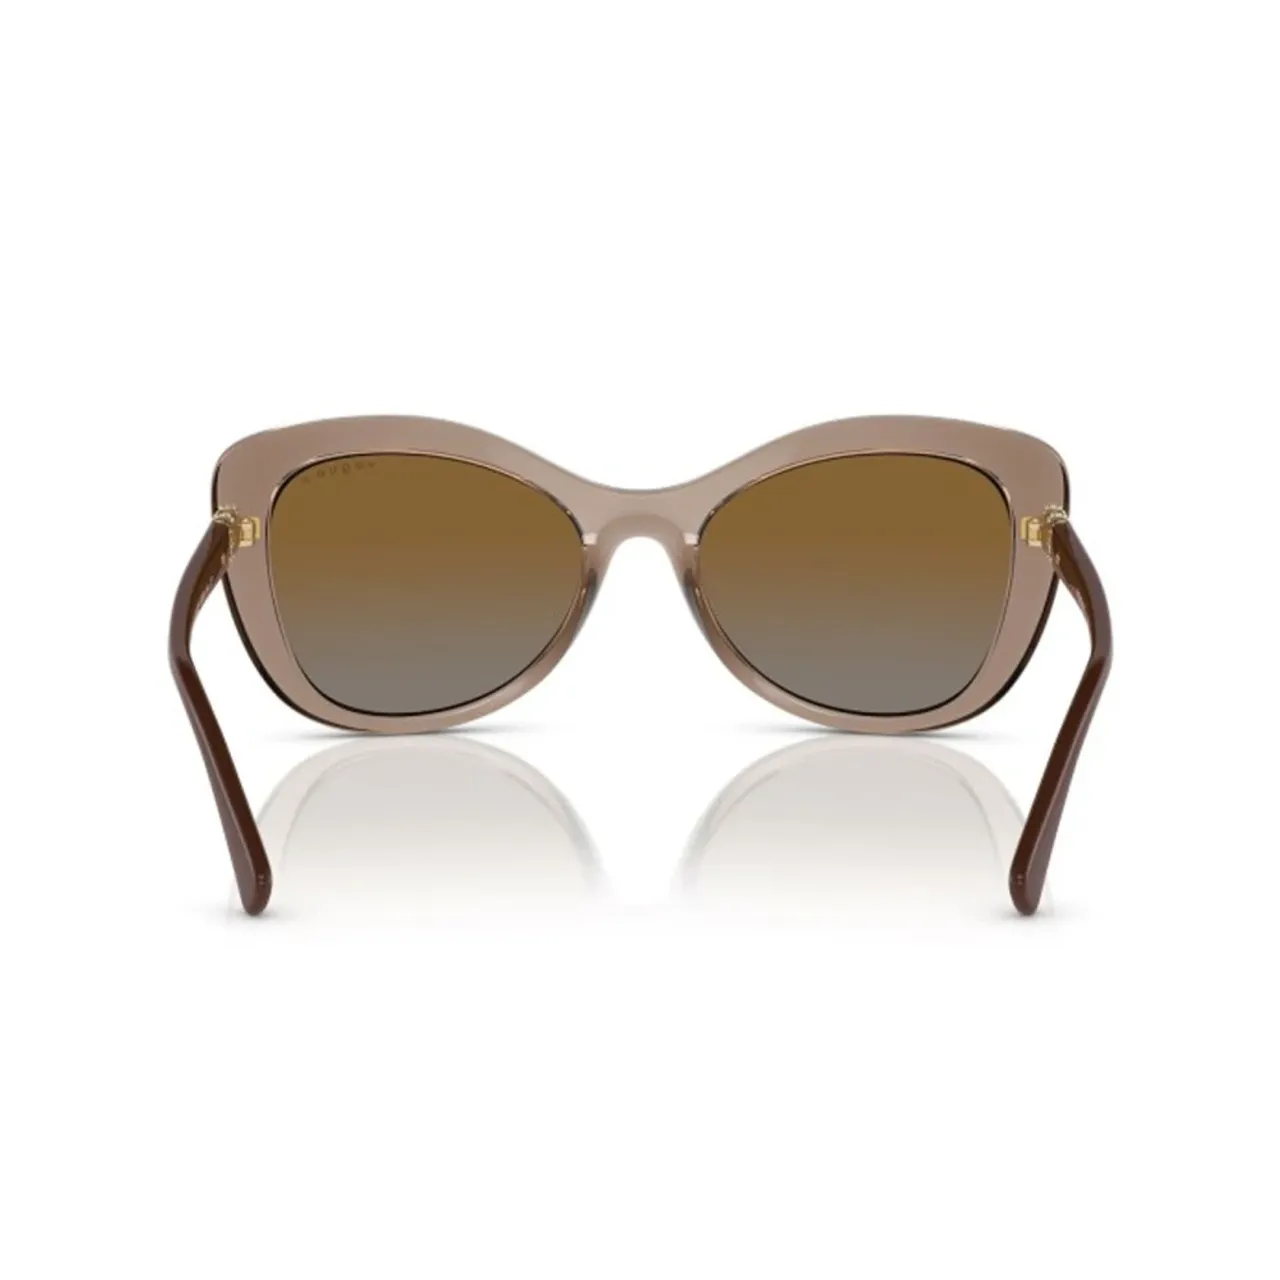 Trendige und elegante polarisierte Sonnenbrille Vogue